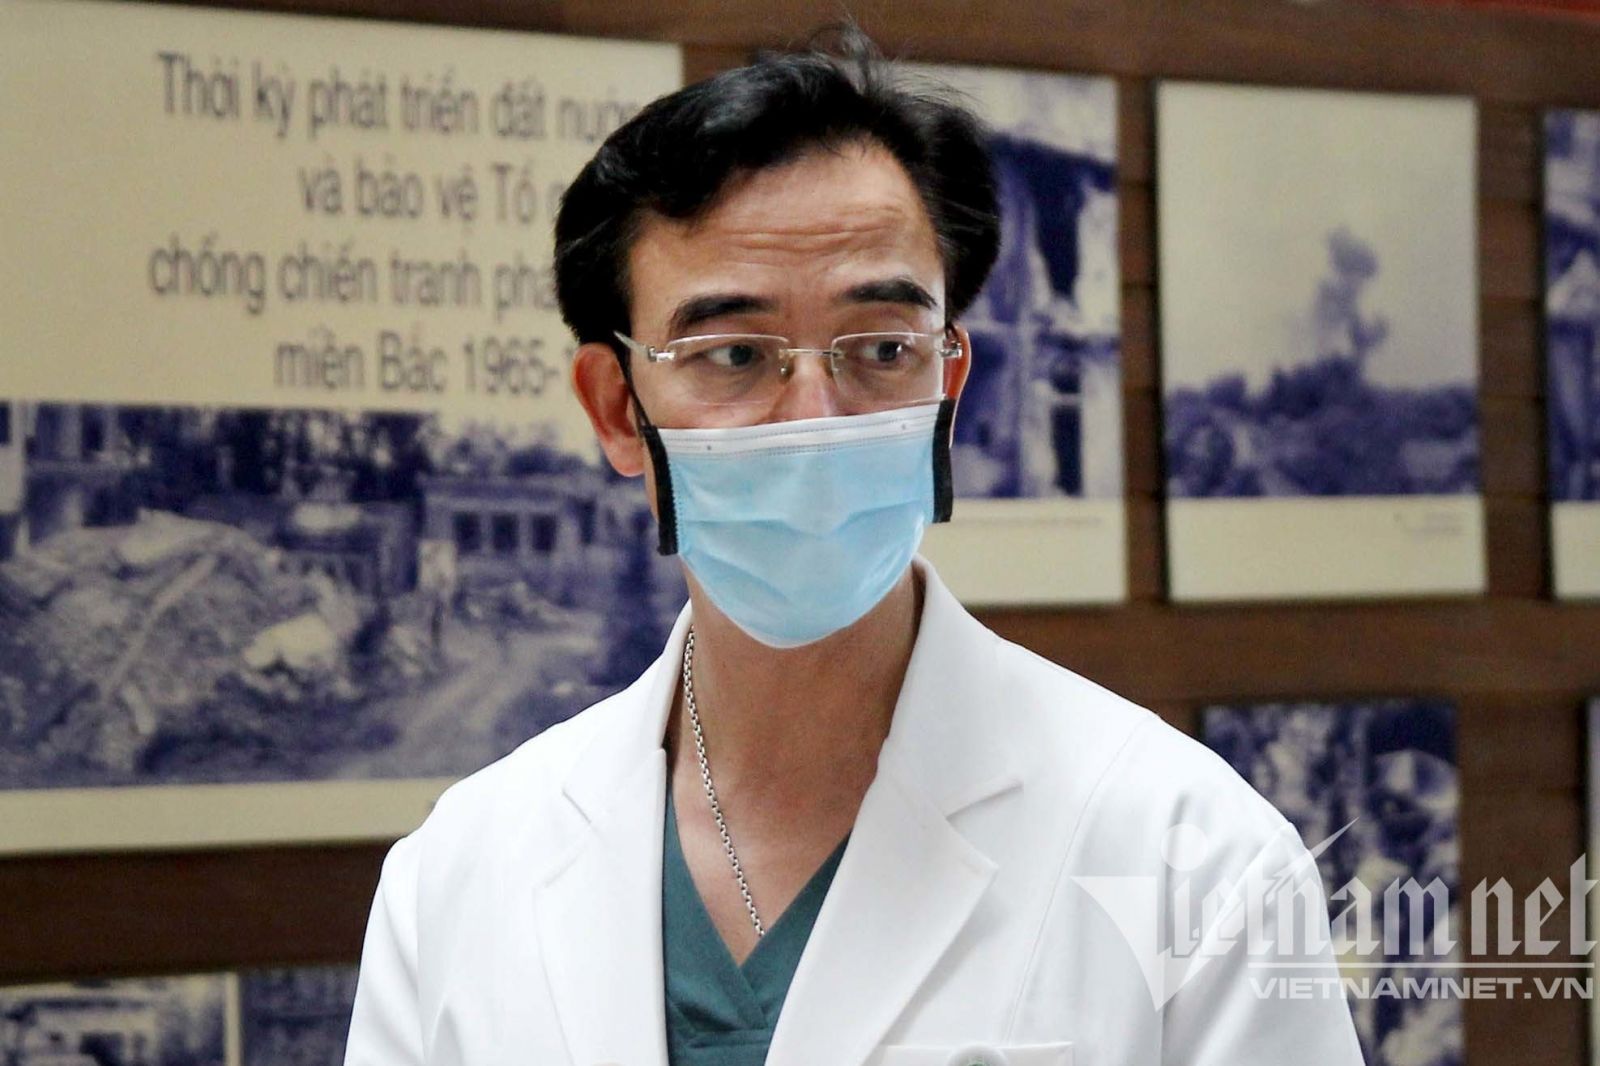 Giám đốc bệnh viện Bạch Mai Nguyễn Quang Tuấn bị khởi tố